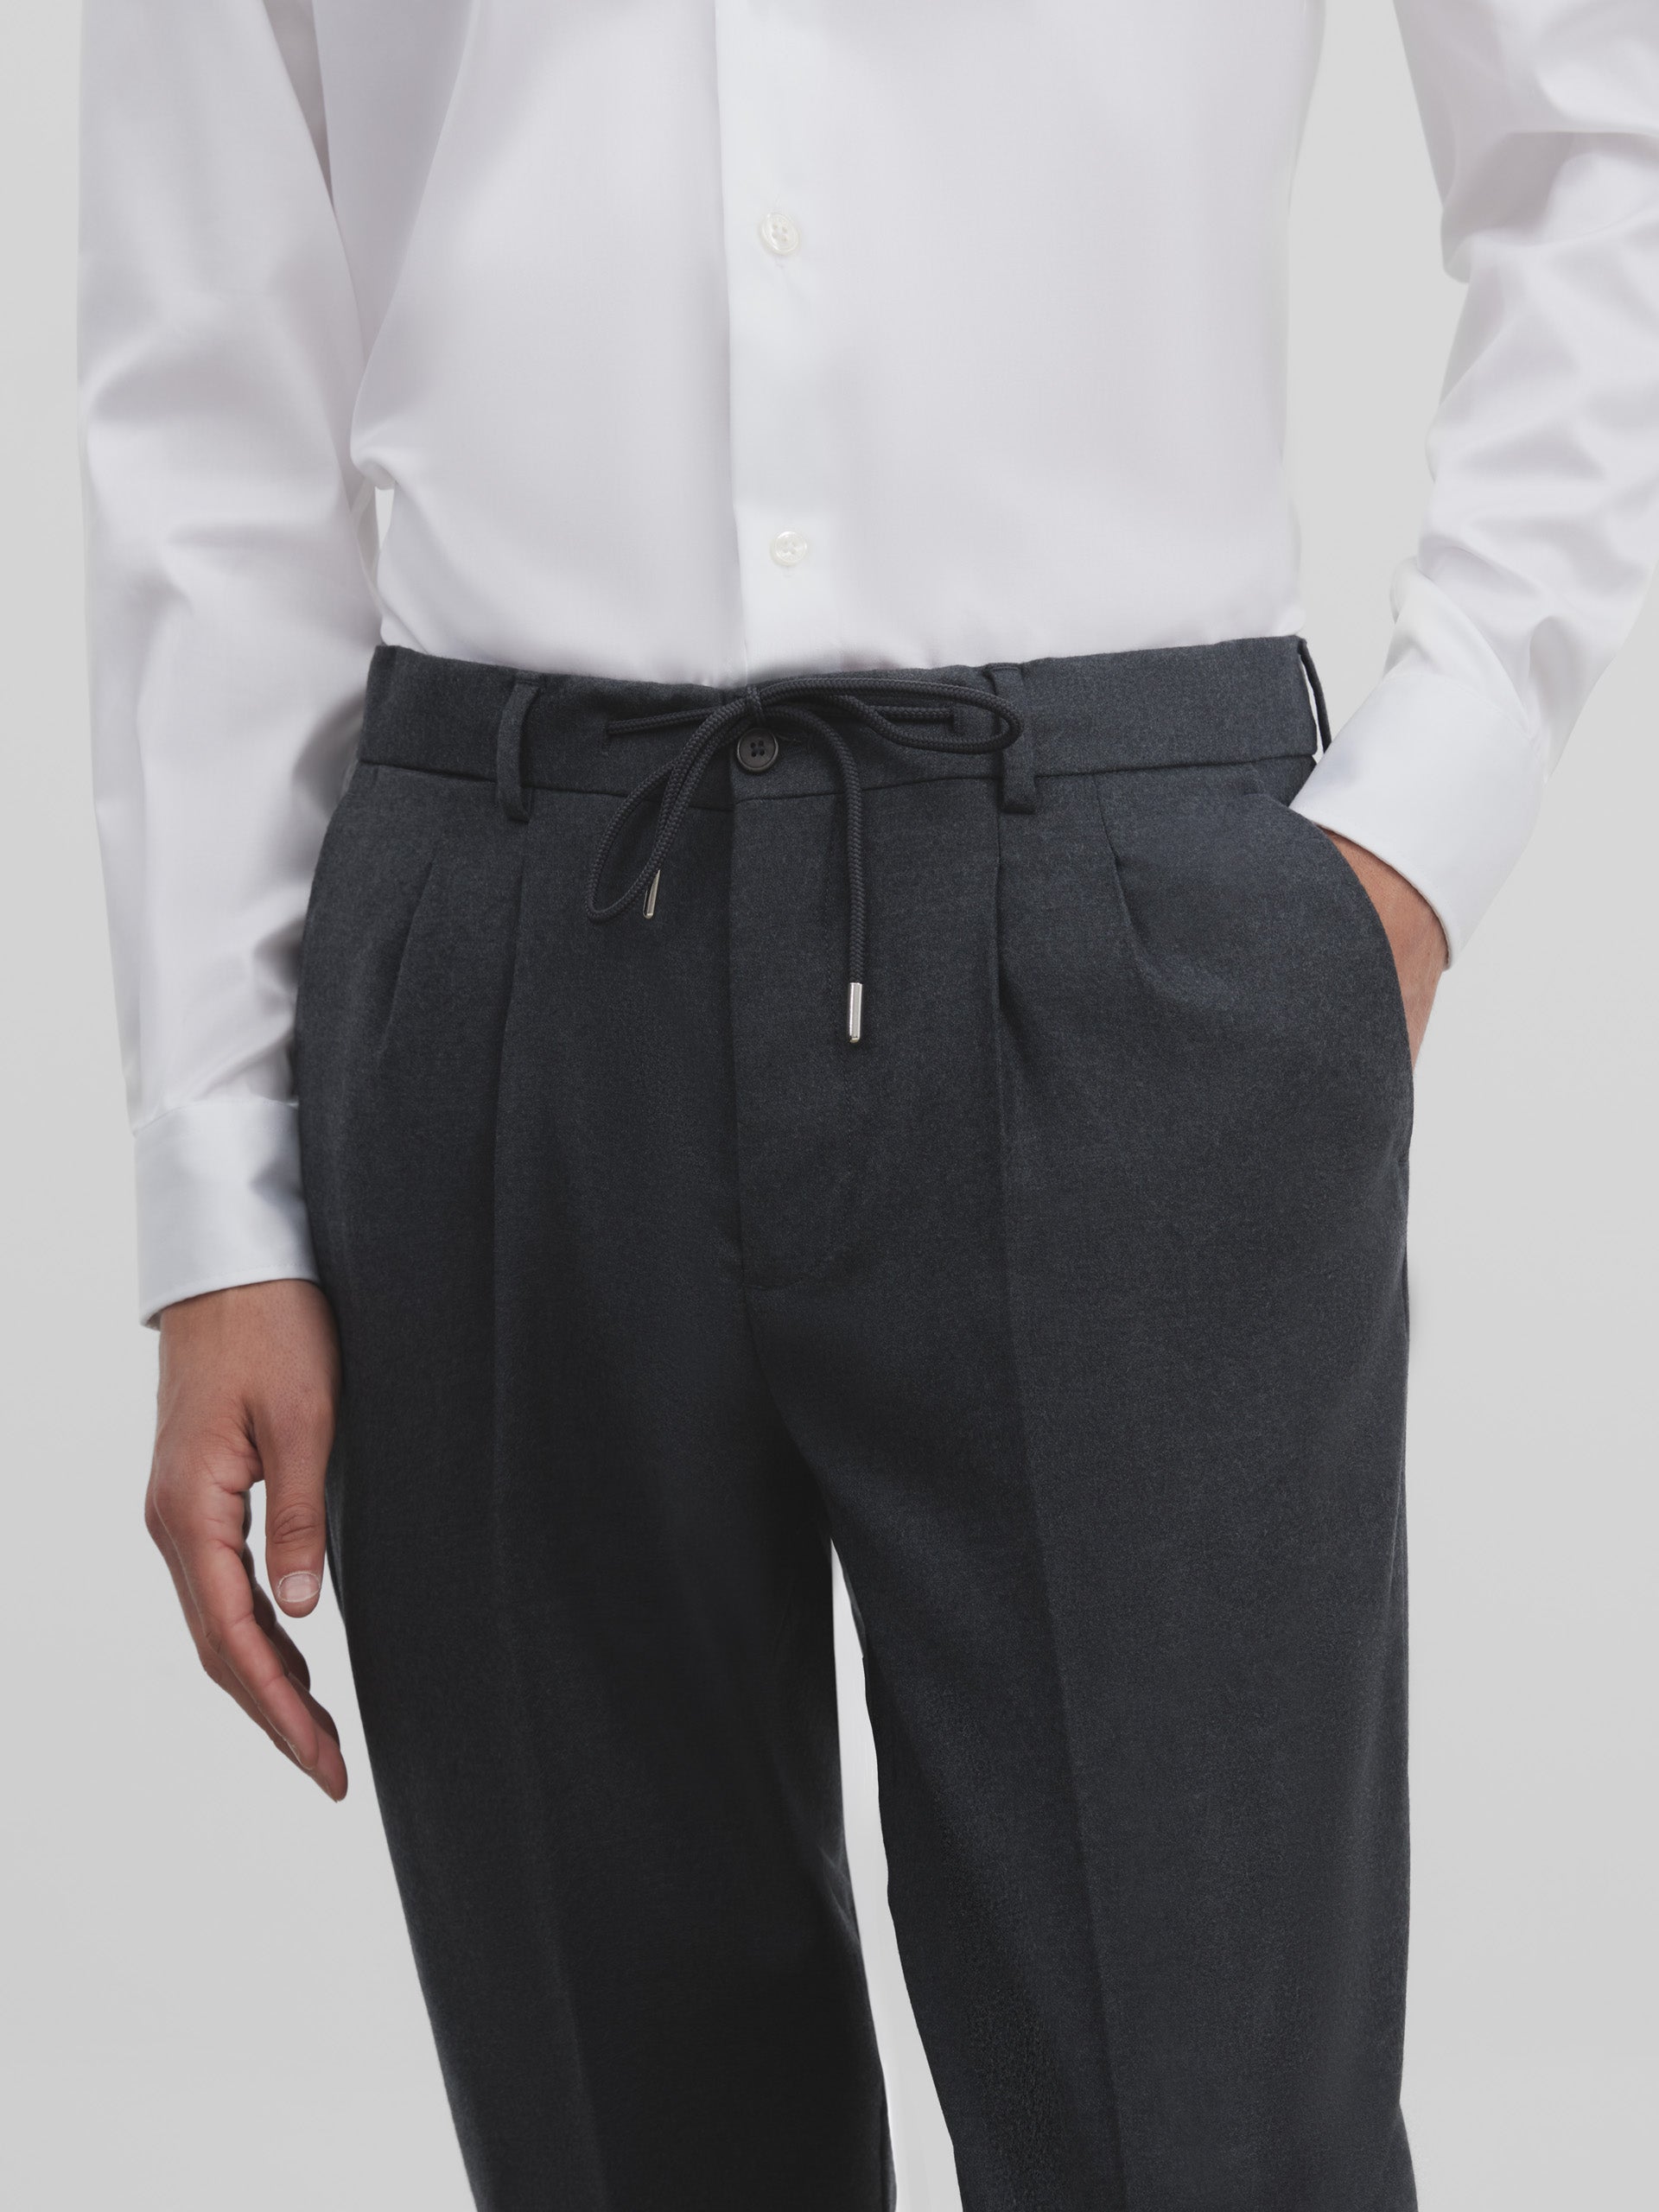 Unique gray traveler dress pants